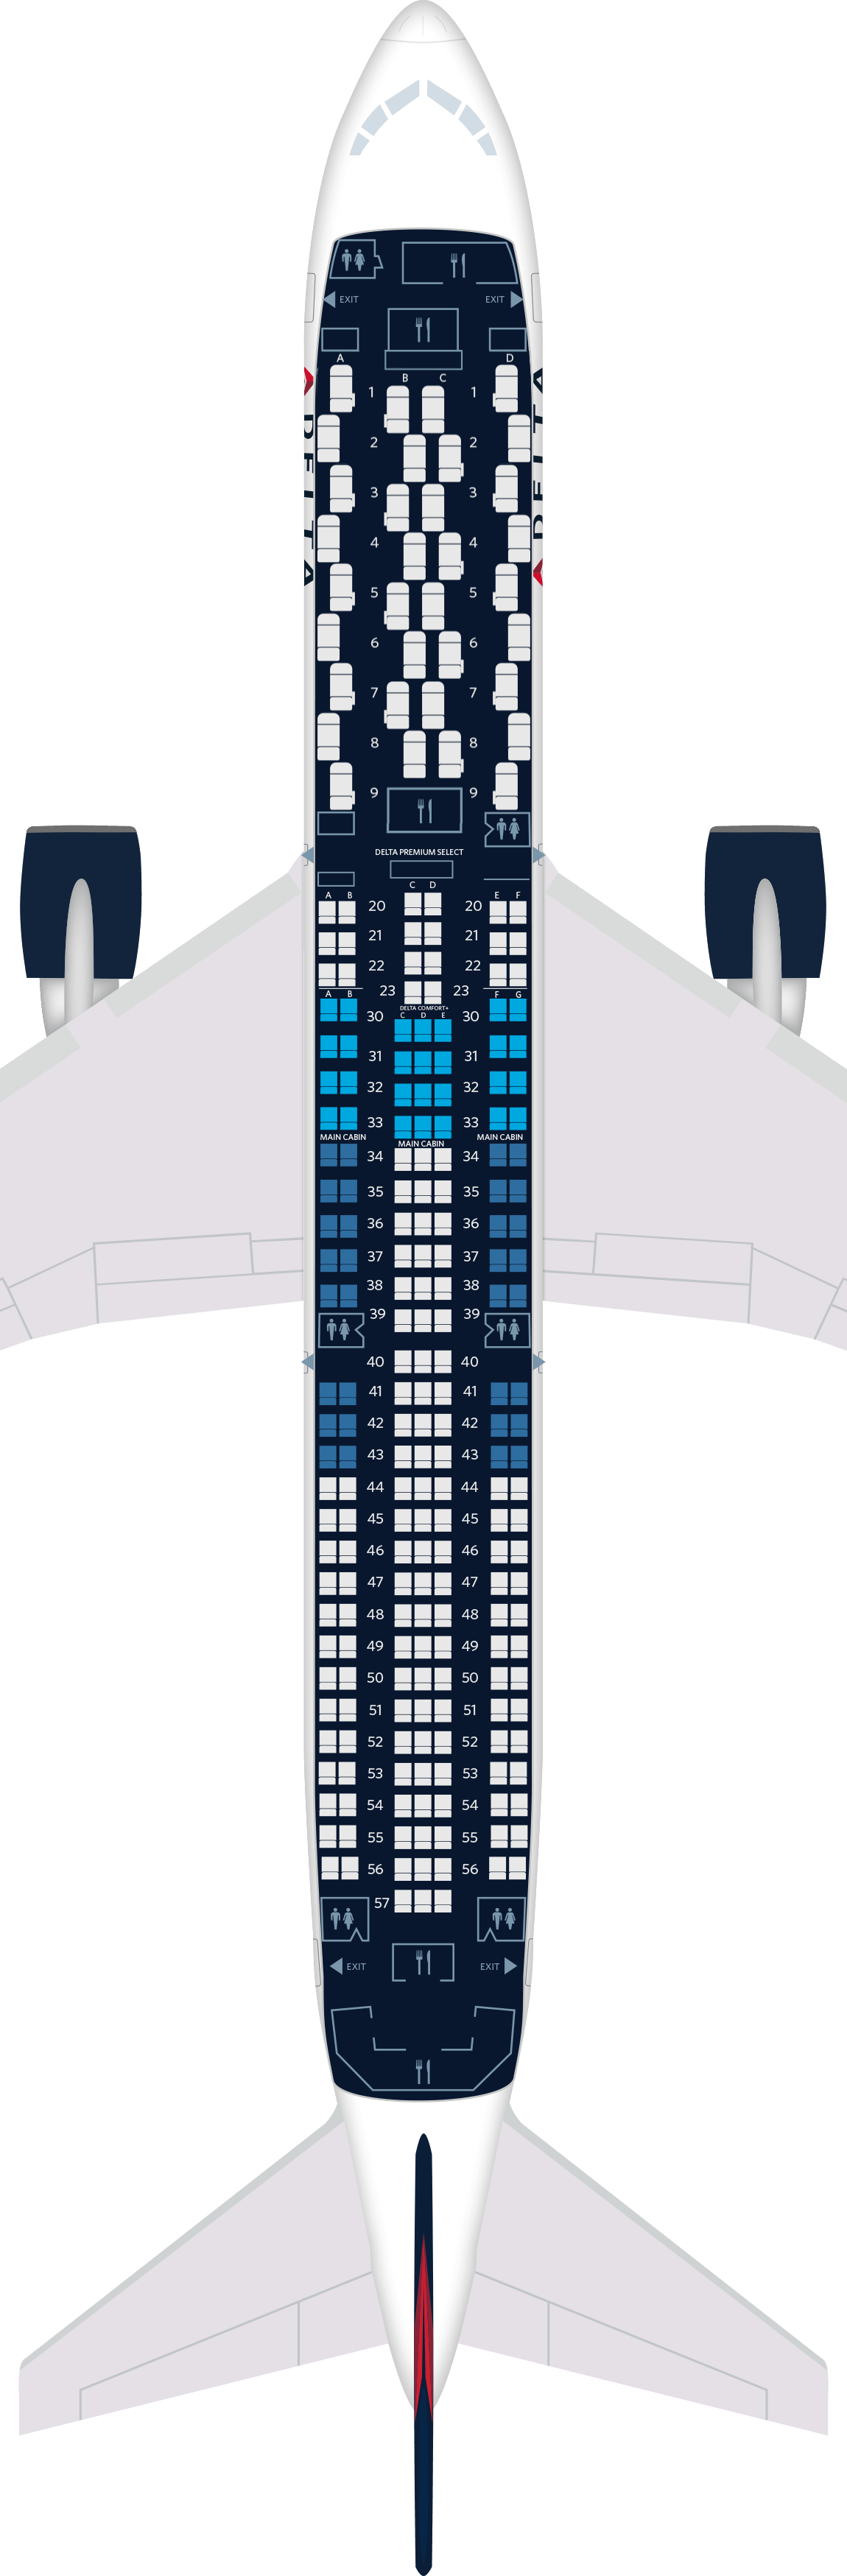 波音767-400ER (764)座位图